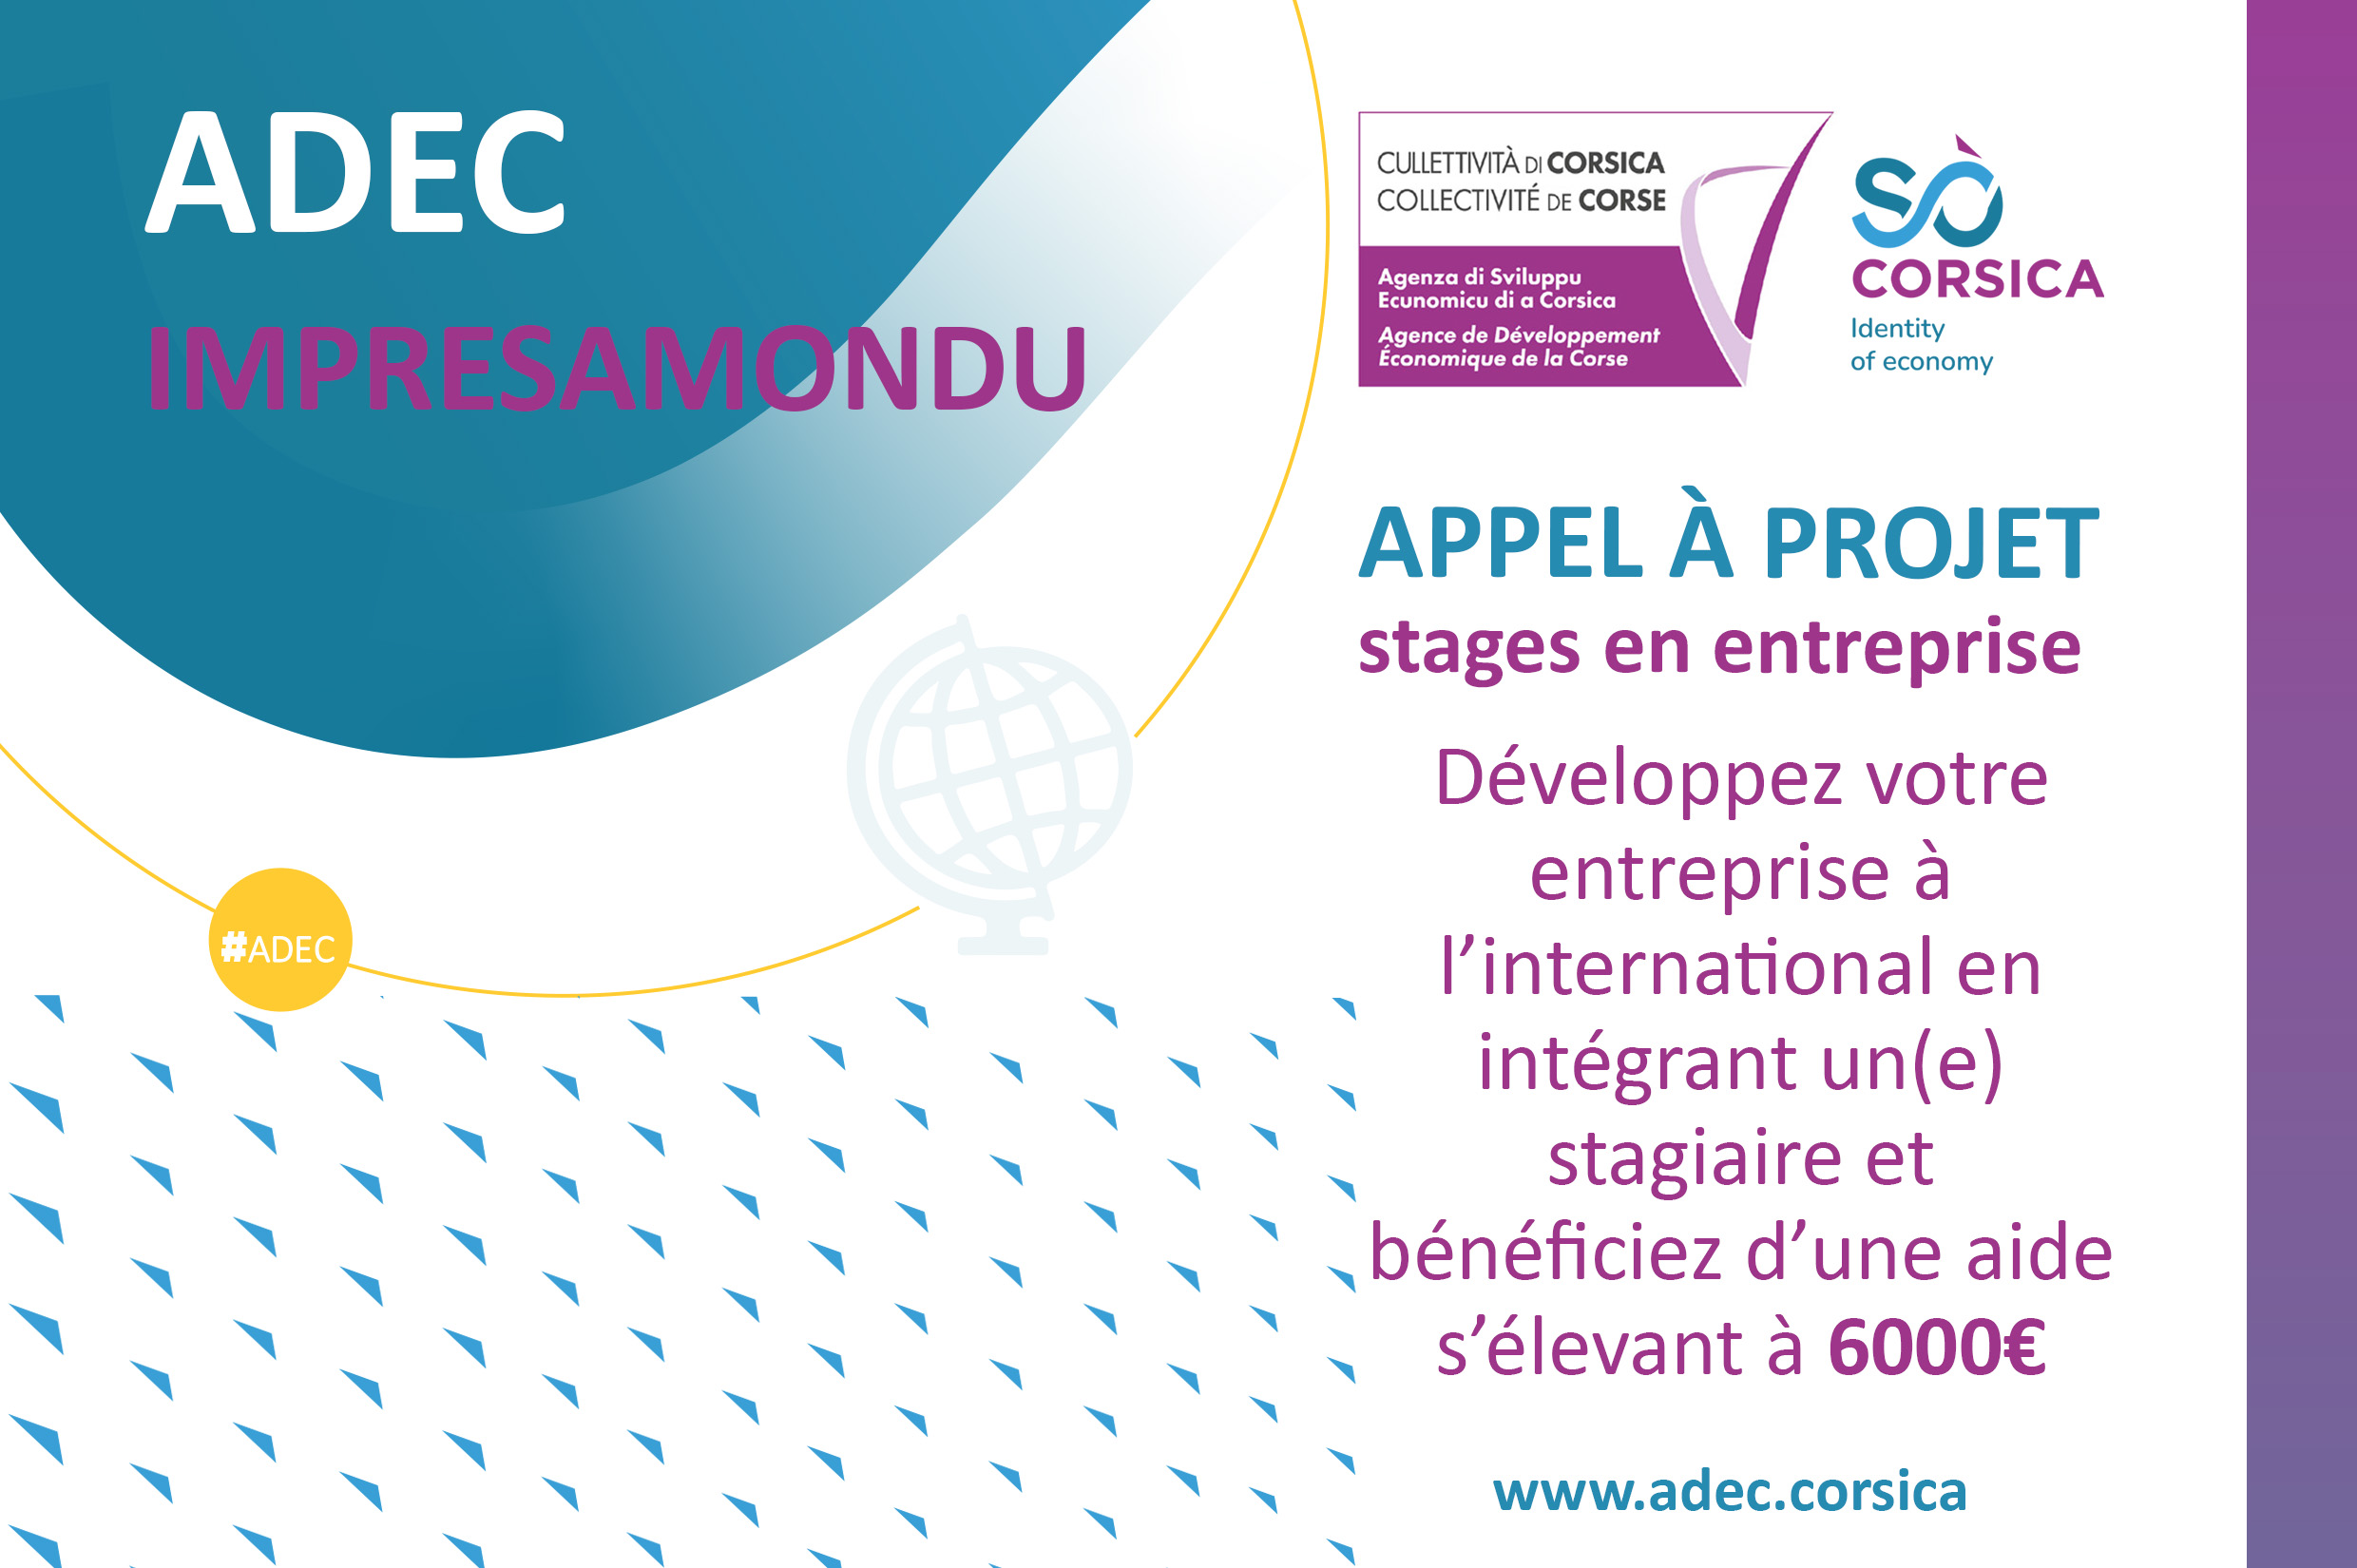 #ADEC 📢[APPEL À PROJETS 🌍IMPRESAMONDU] «Développez votre entreprise à l’international en intégrant un(e) stagiaire et bénéficiez d’une aide s’élevant à 6000€»